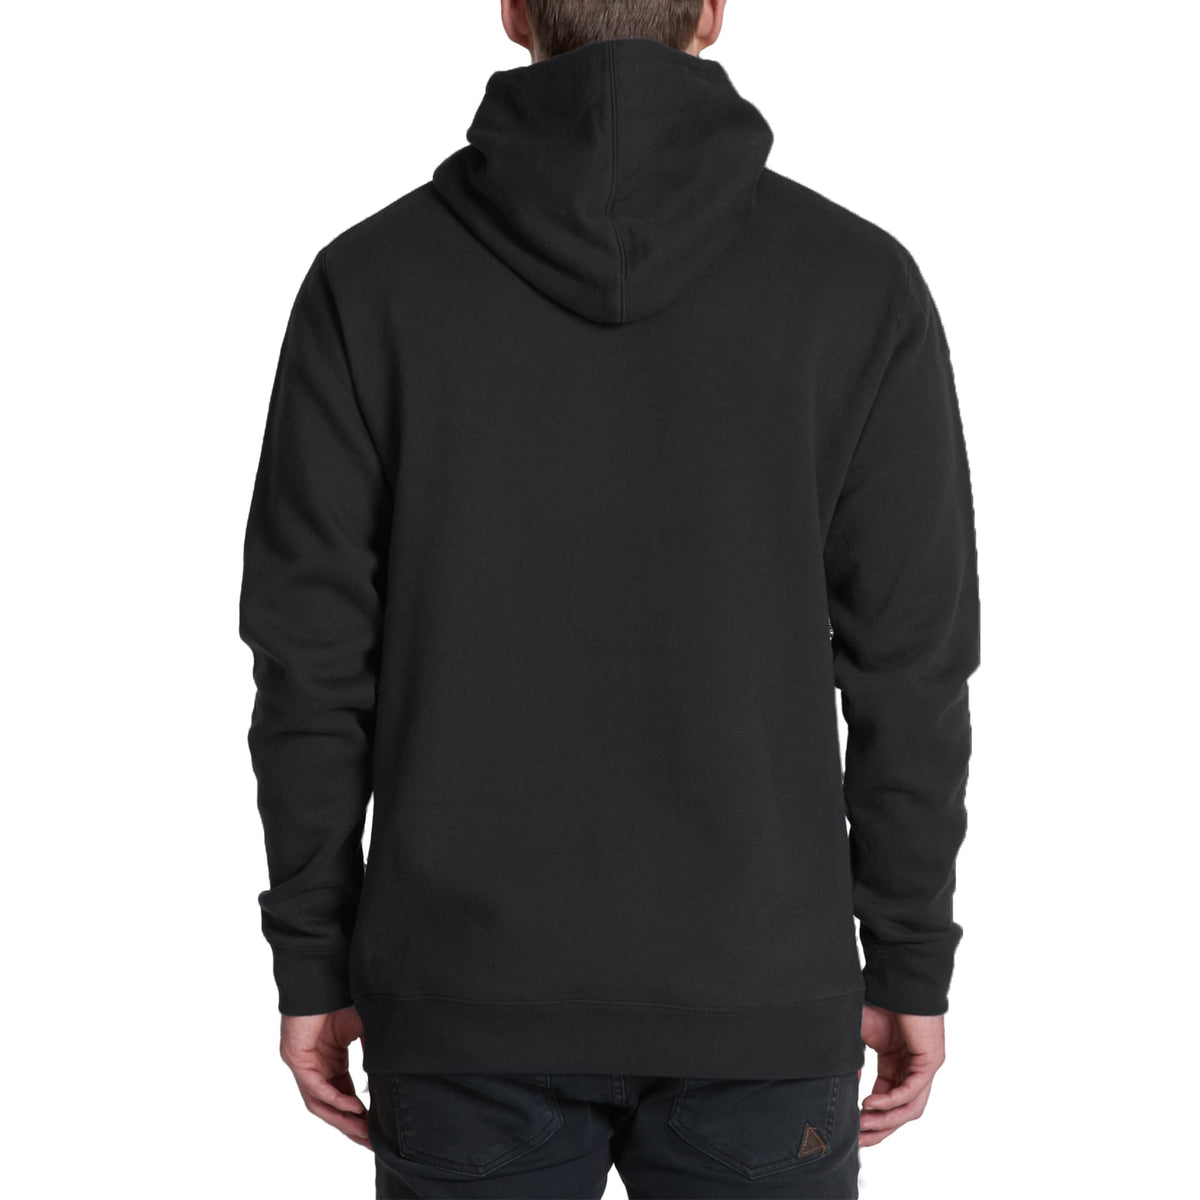 back view of model wearing black hoodie